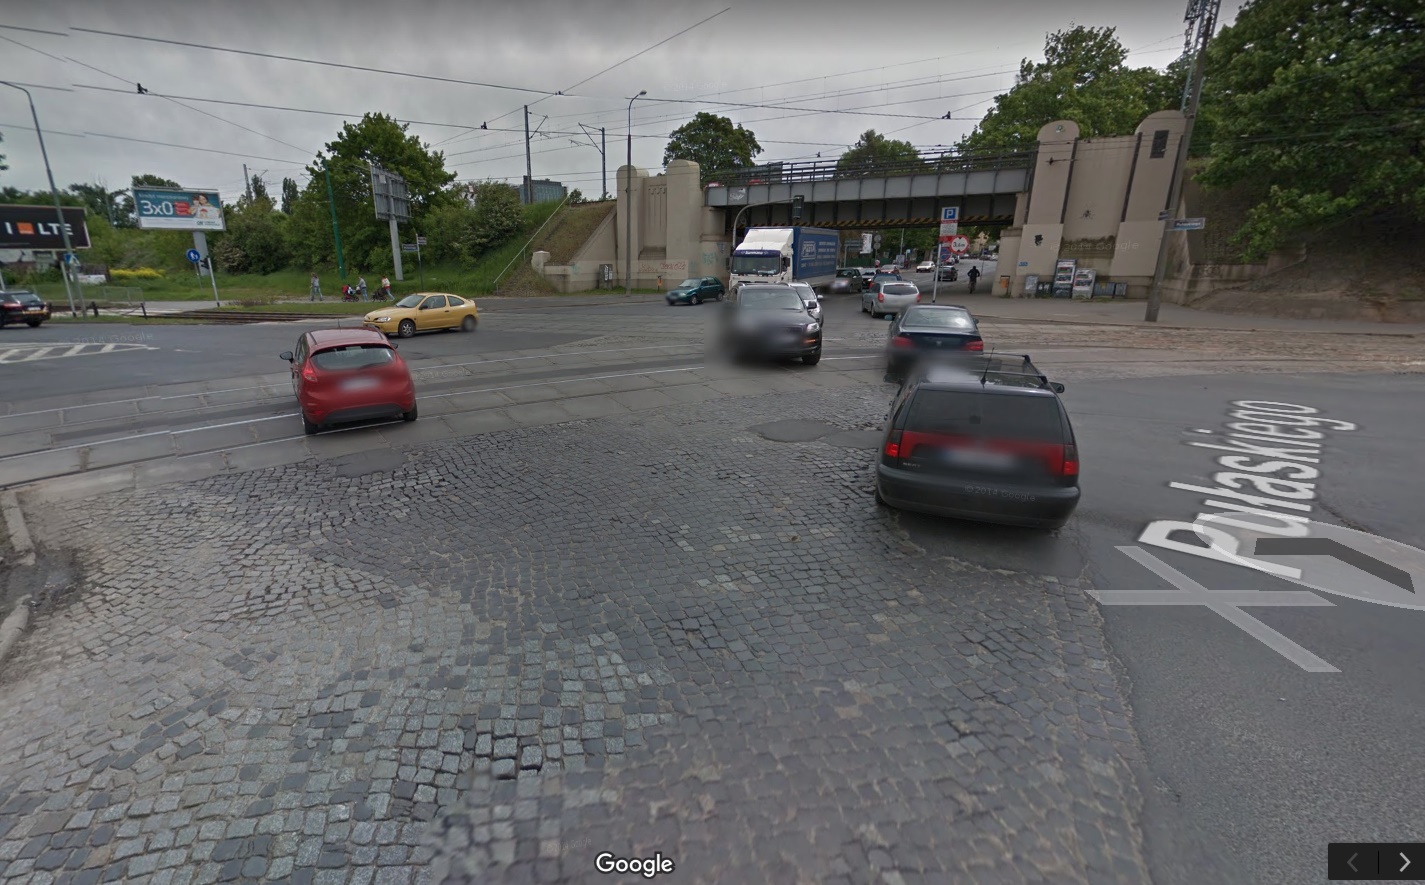 bruk pułaskiego nowowiejskiego - Street View - Google Maps